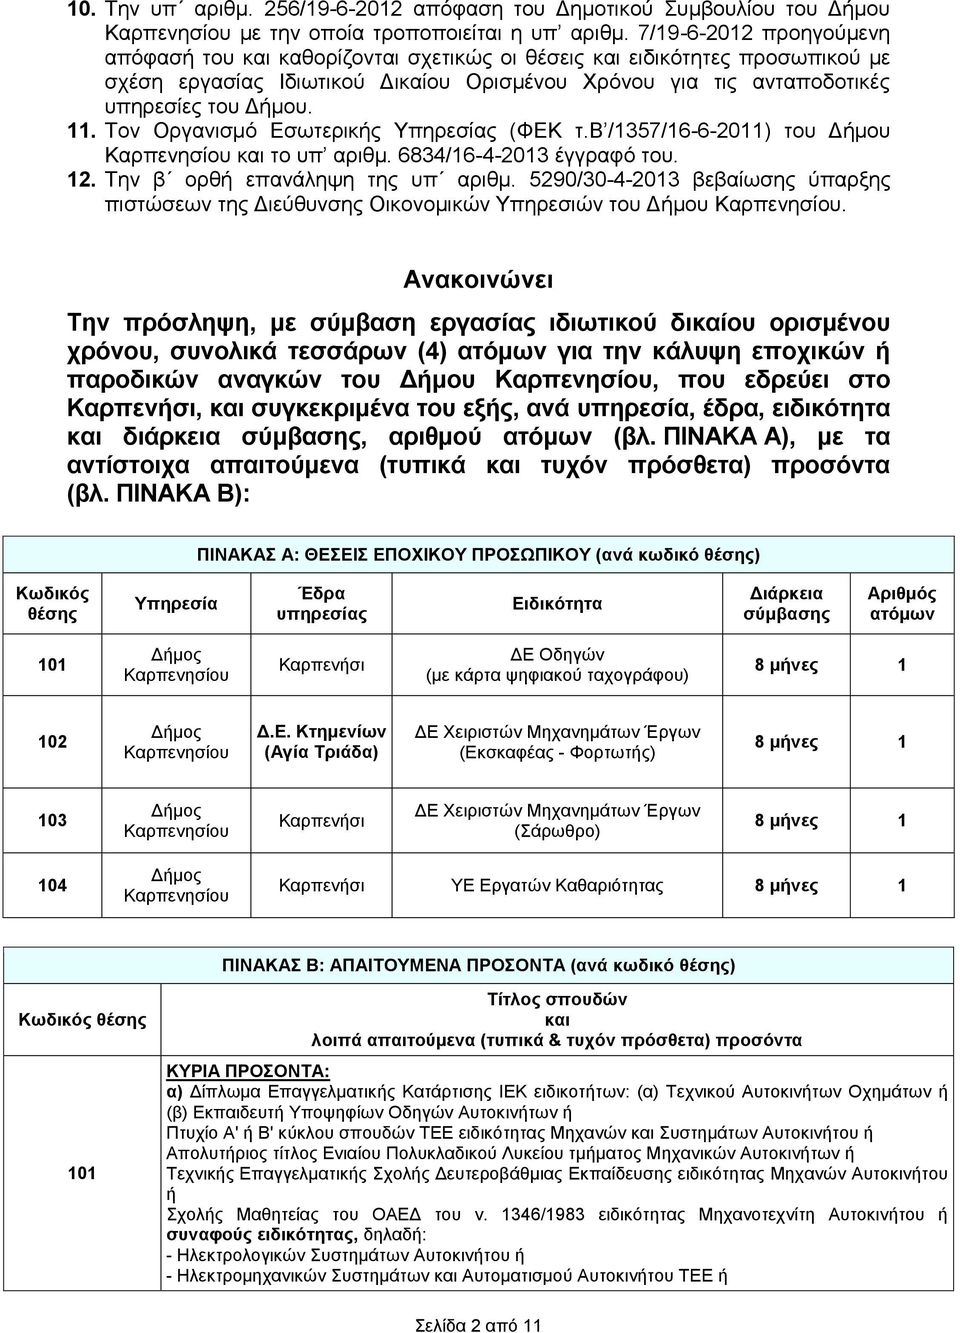 Τον Οργανισμό Εσωτερικής Υπηρεσίας (ΦΕΚ τ.β /1357/16-6-2011) του Δήμου Καρπενησίου και το υπ αριθμ. 6834/16-4-2013 έγγραφό του. 12. Την β ορθή επανάληψη της υπ αριθμ.